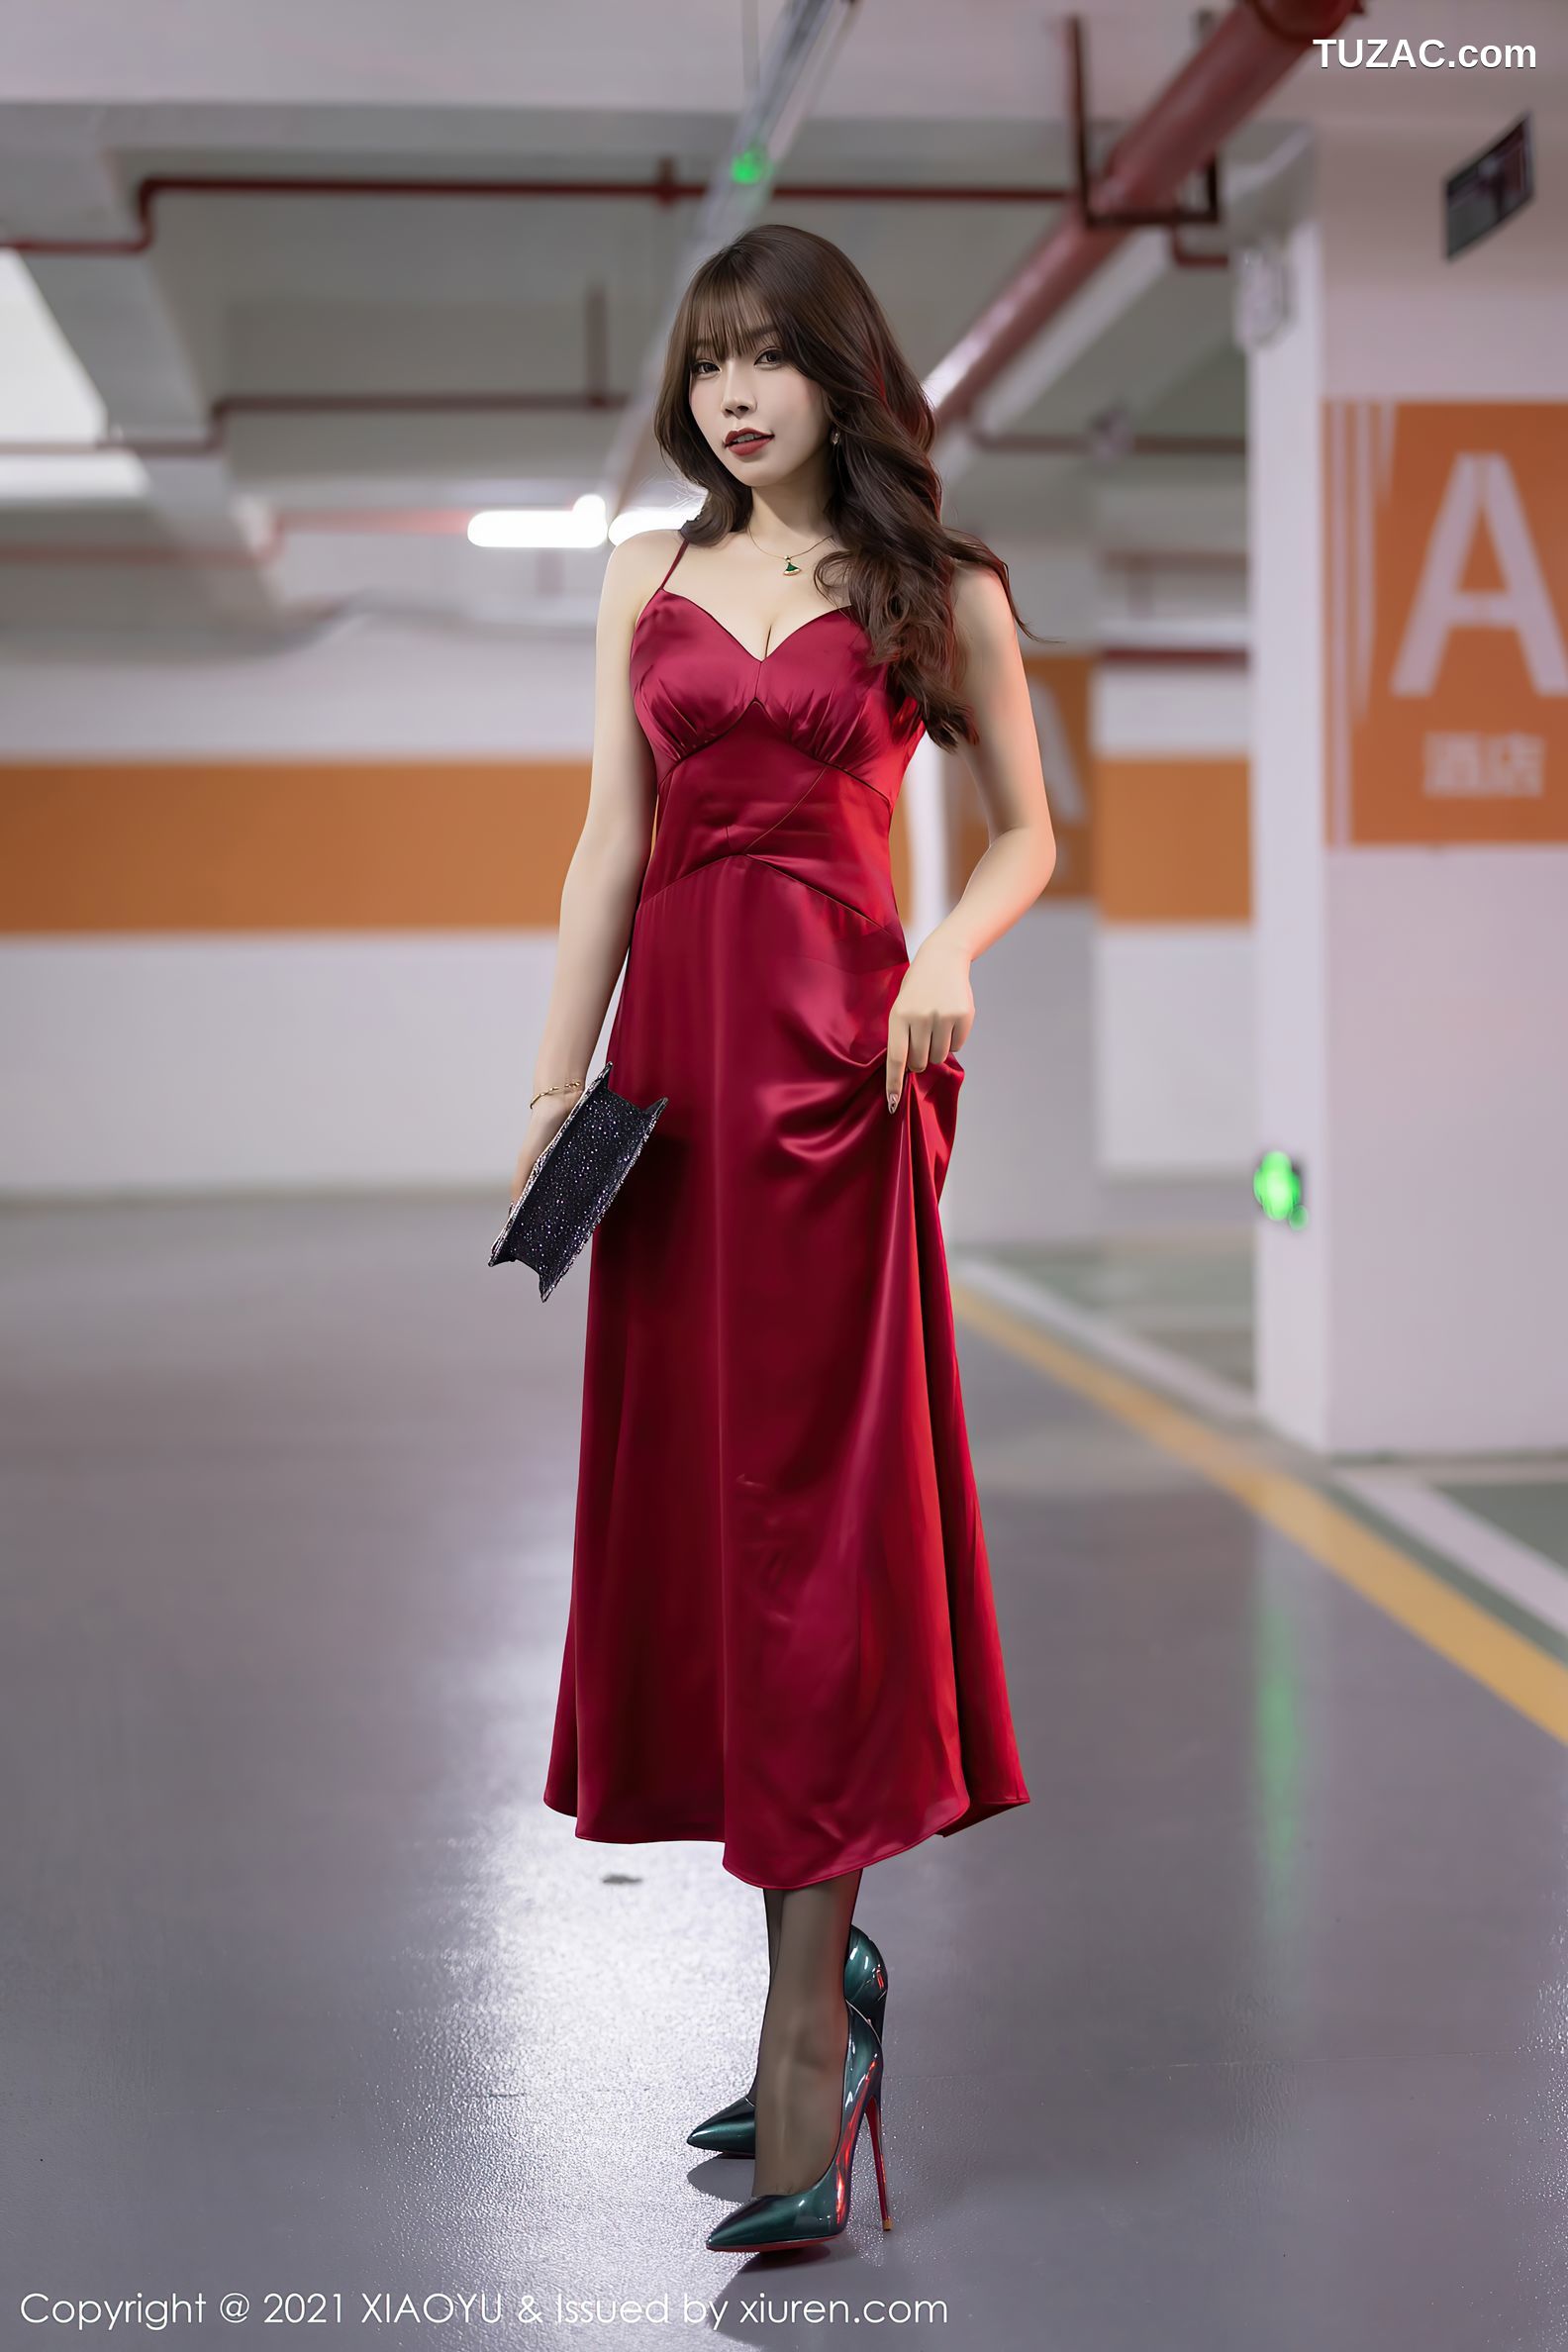 XiaoYu语画界-654-芝芝-猩红吊带裙黑丝-2021.11.15